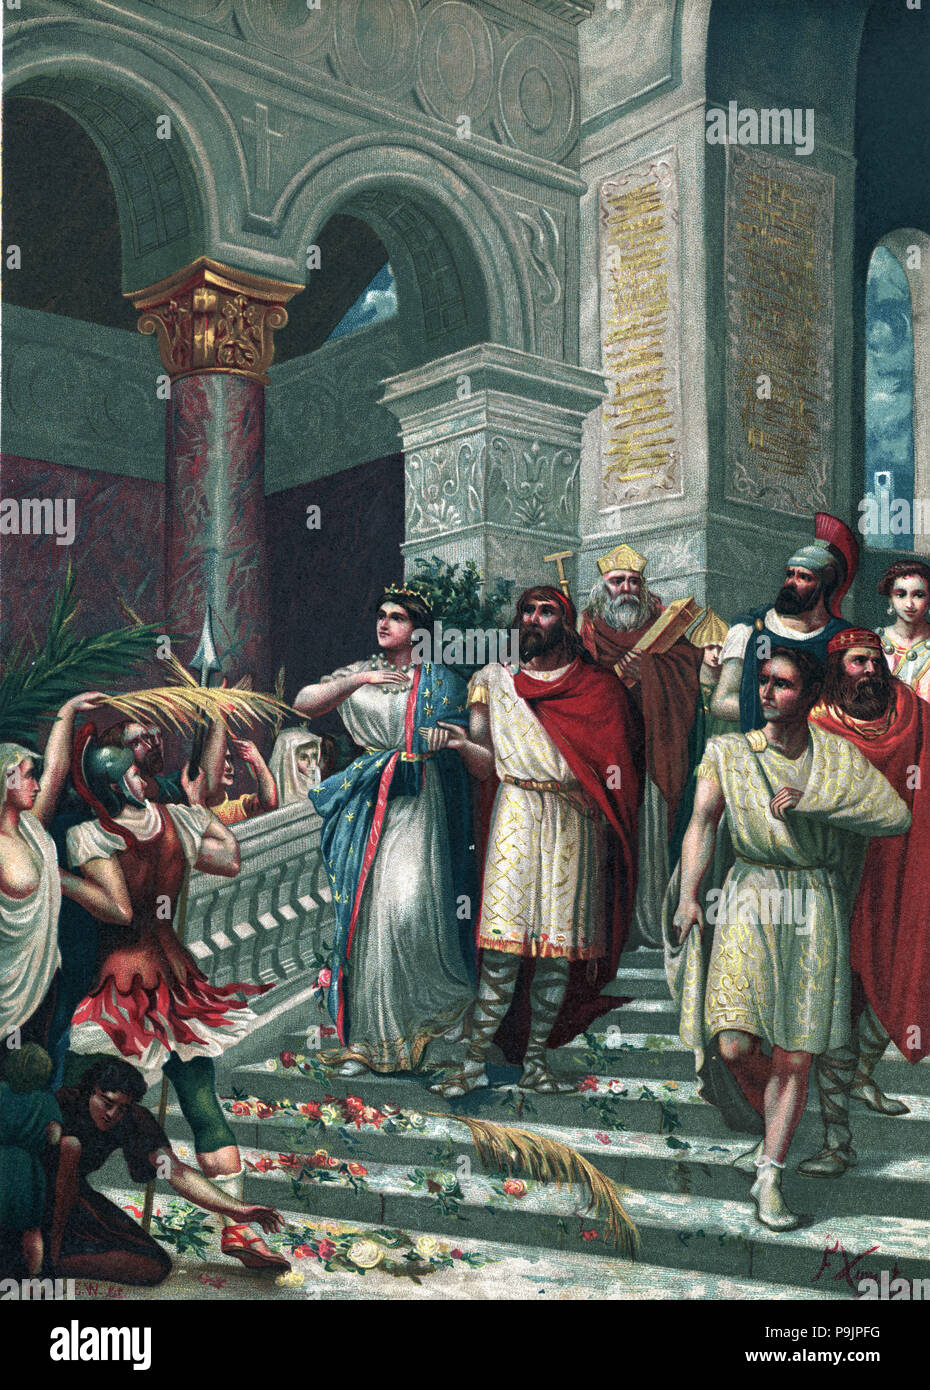 Hochzeit der römischen Patrizier Gala Placidia mit der goth King Ataulfo in Barcelona. Stockfoto